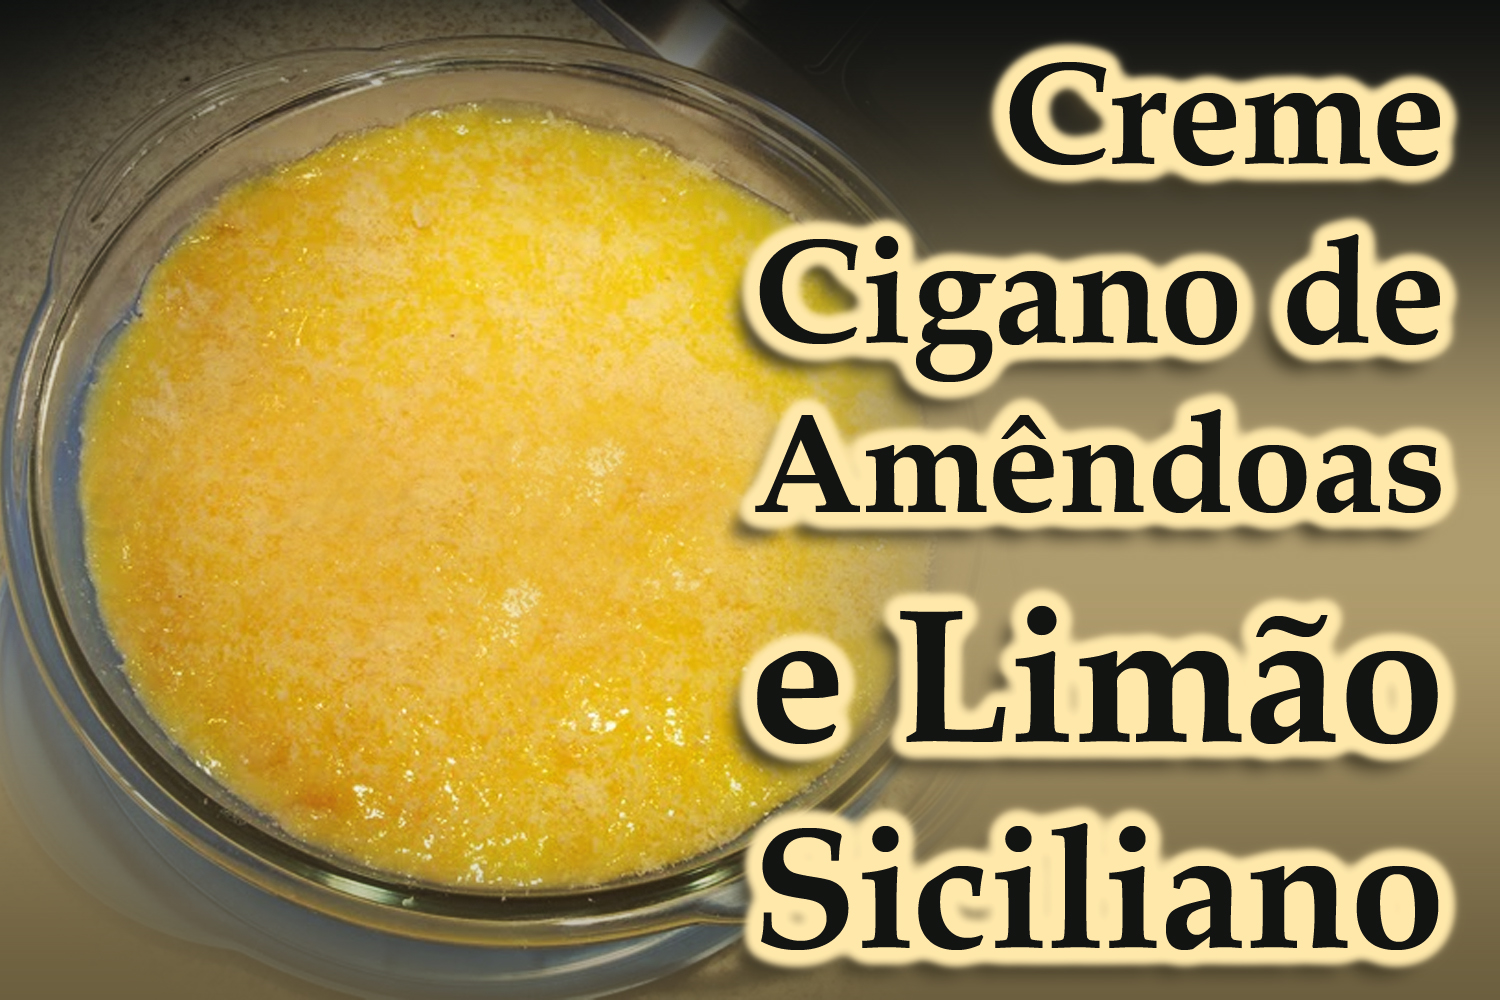 Creme Cigano de Amêndoas e Limão Siciliano